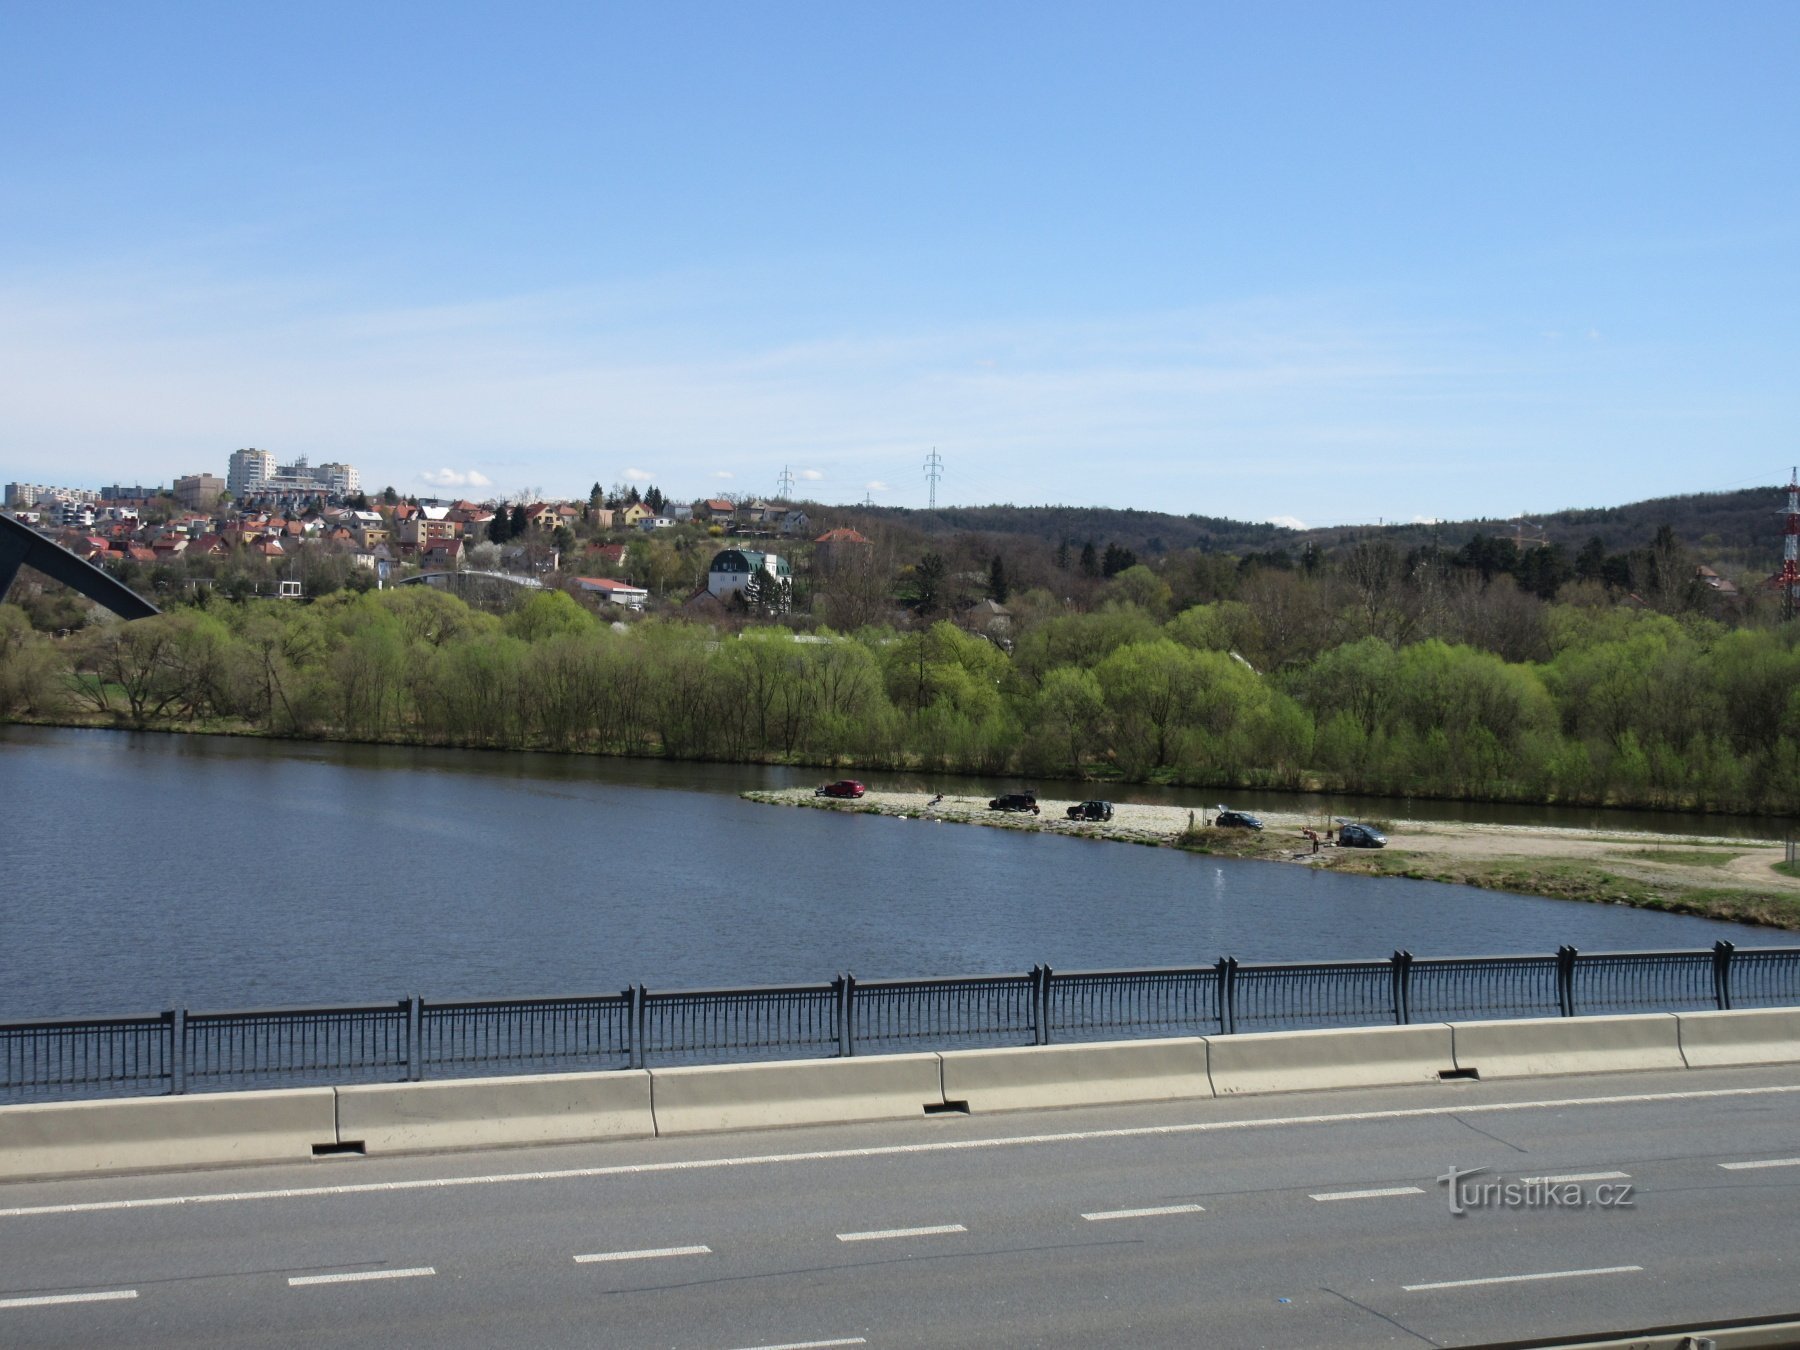 Lahovice - turnuri de observație ale podului Lahovice și confluența râurilor Berounka și Vltava